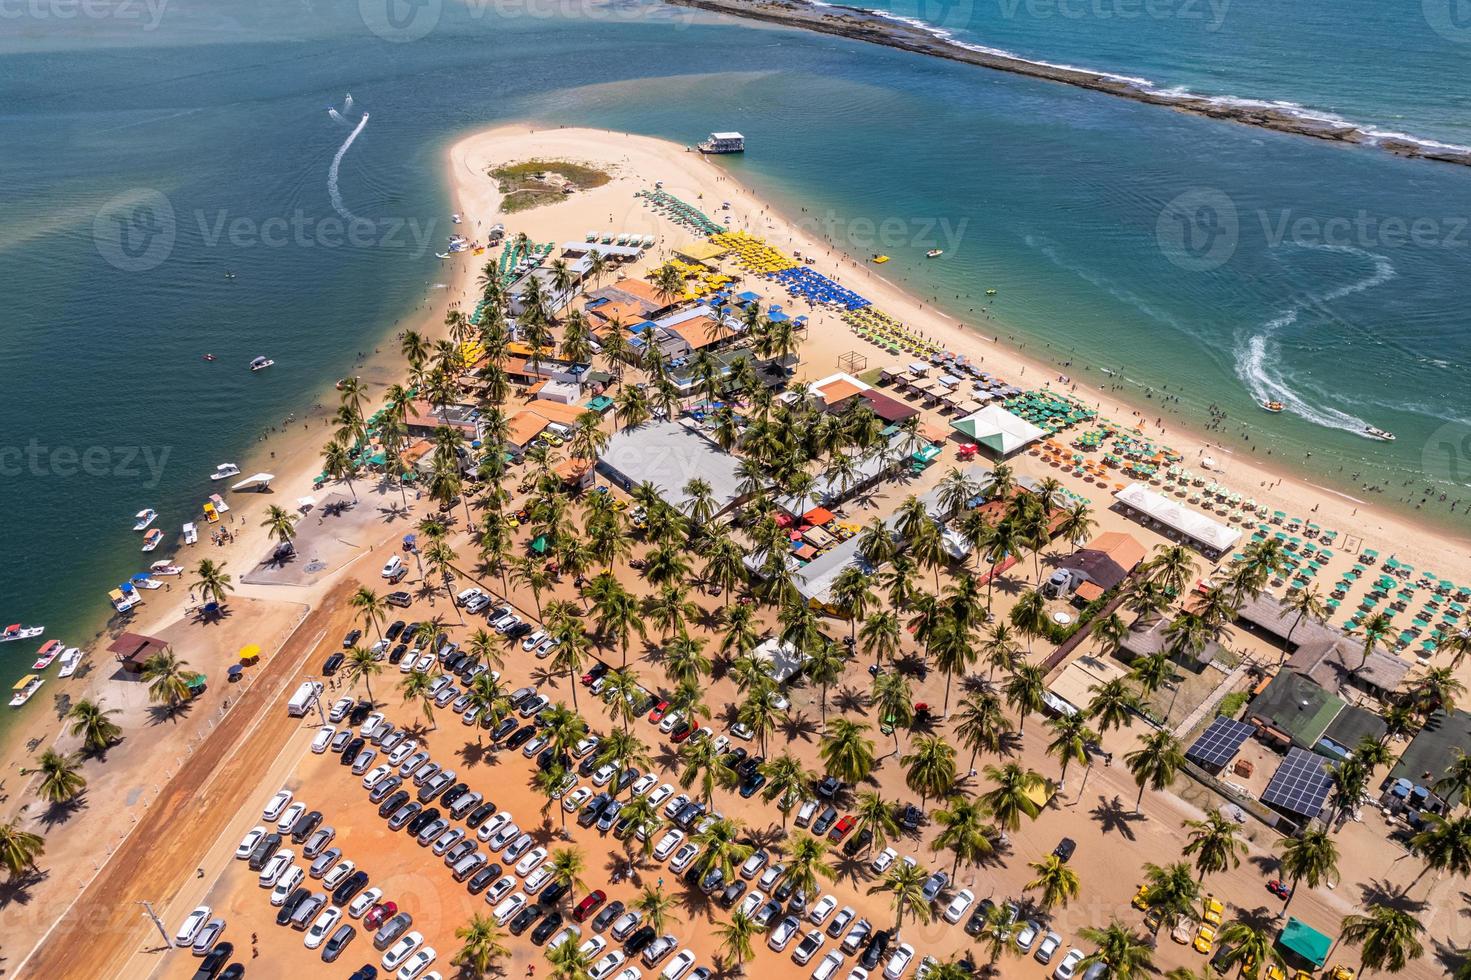 vue aérienne de la plage de gunga ou praia do gunga, avec ses eaux claires et ses cocotiers, maceio, alagoas. région nord-est du brésil. photo